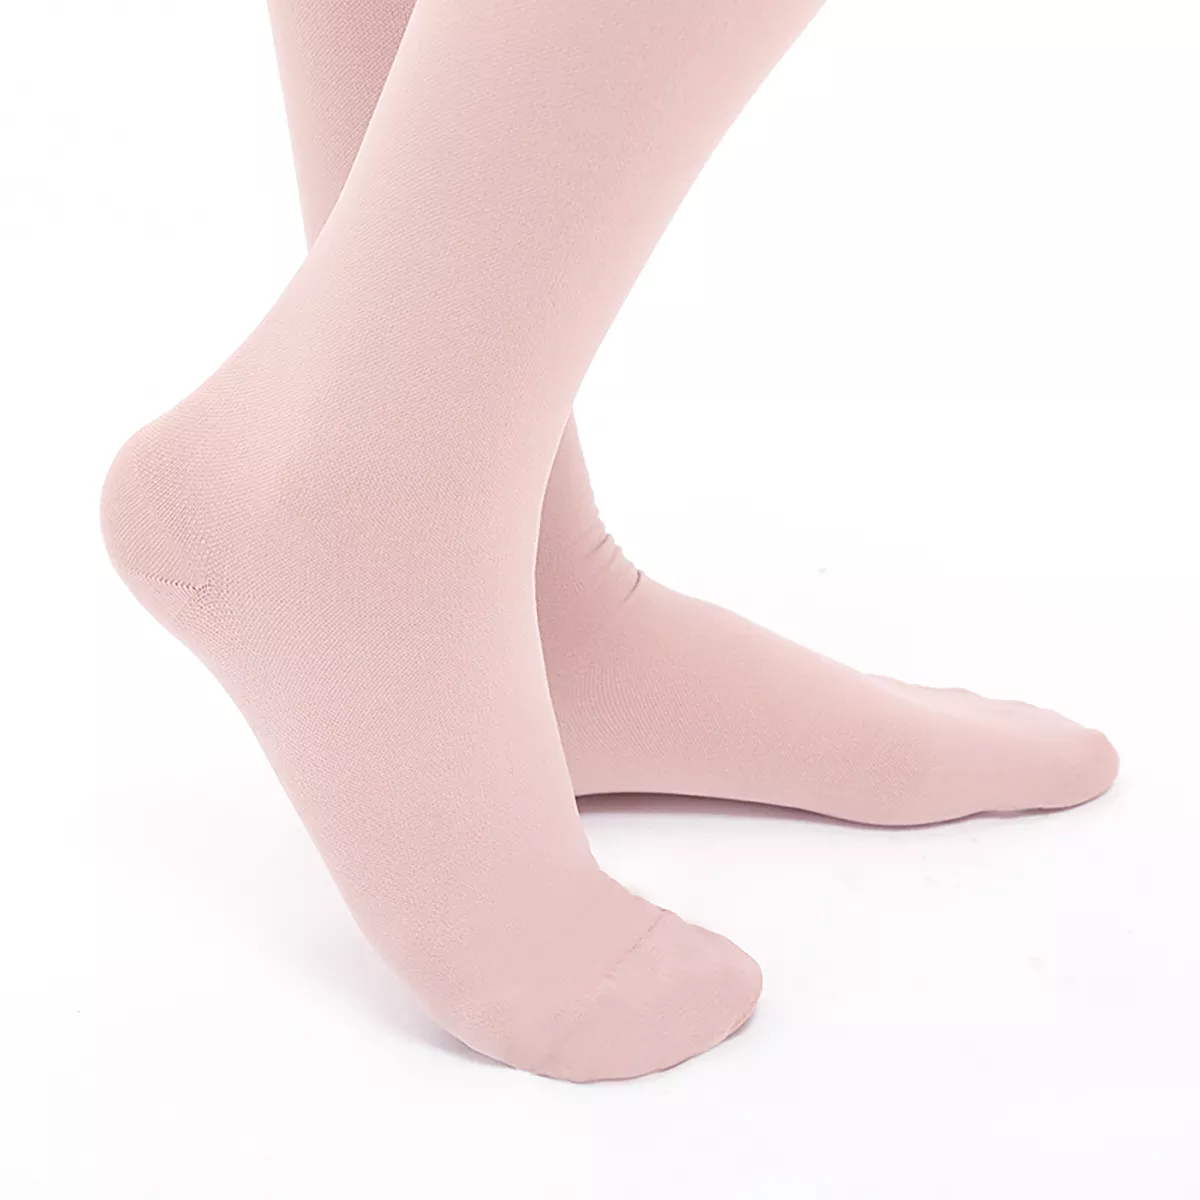 Varcoh ® 15-20 mmHg Men Knee High Closed Toe Compression Socks Beige